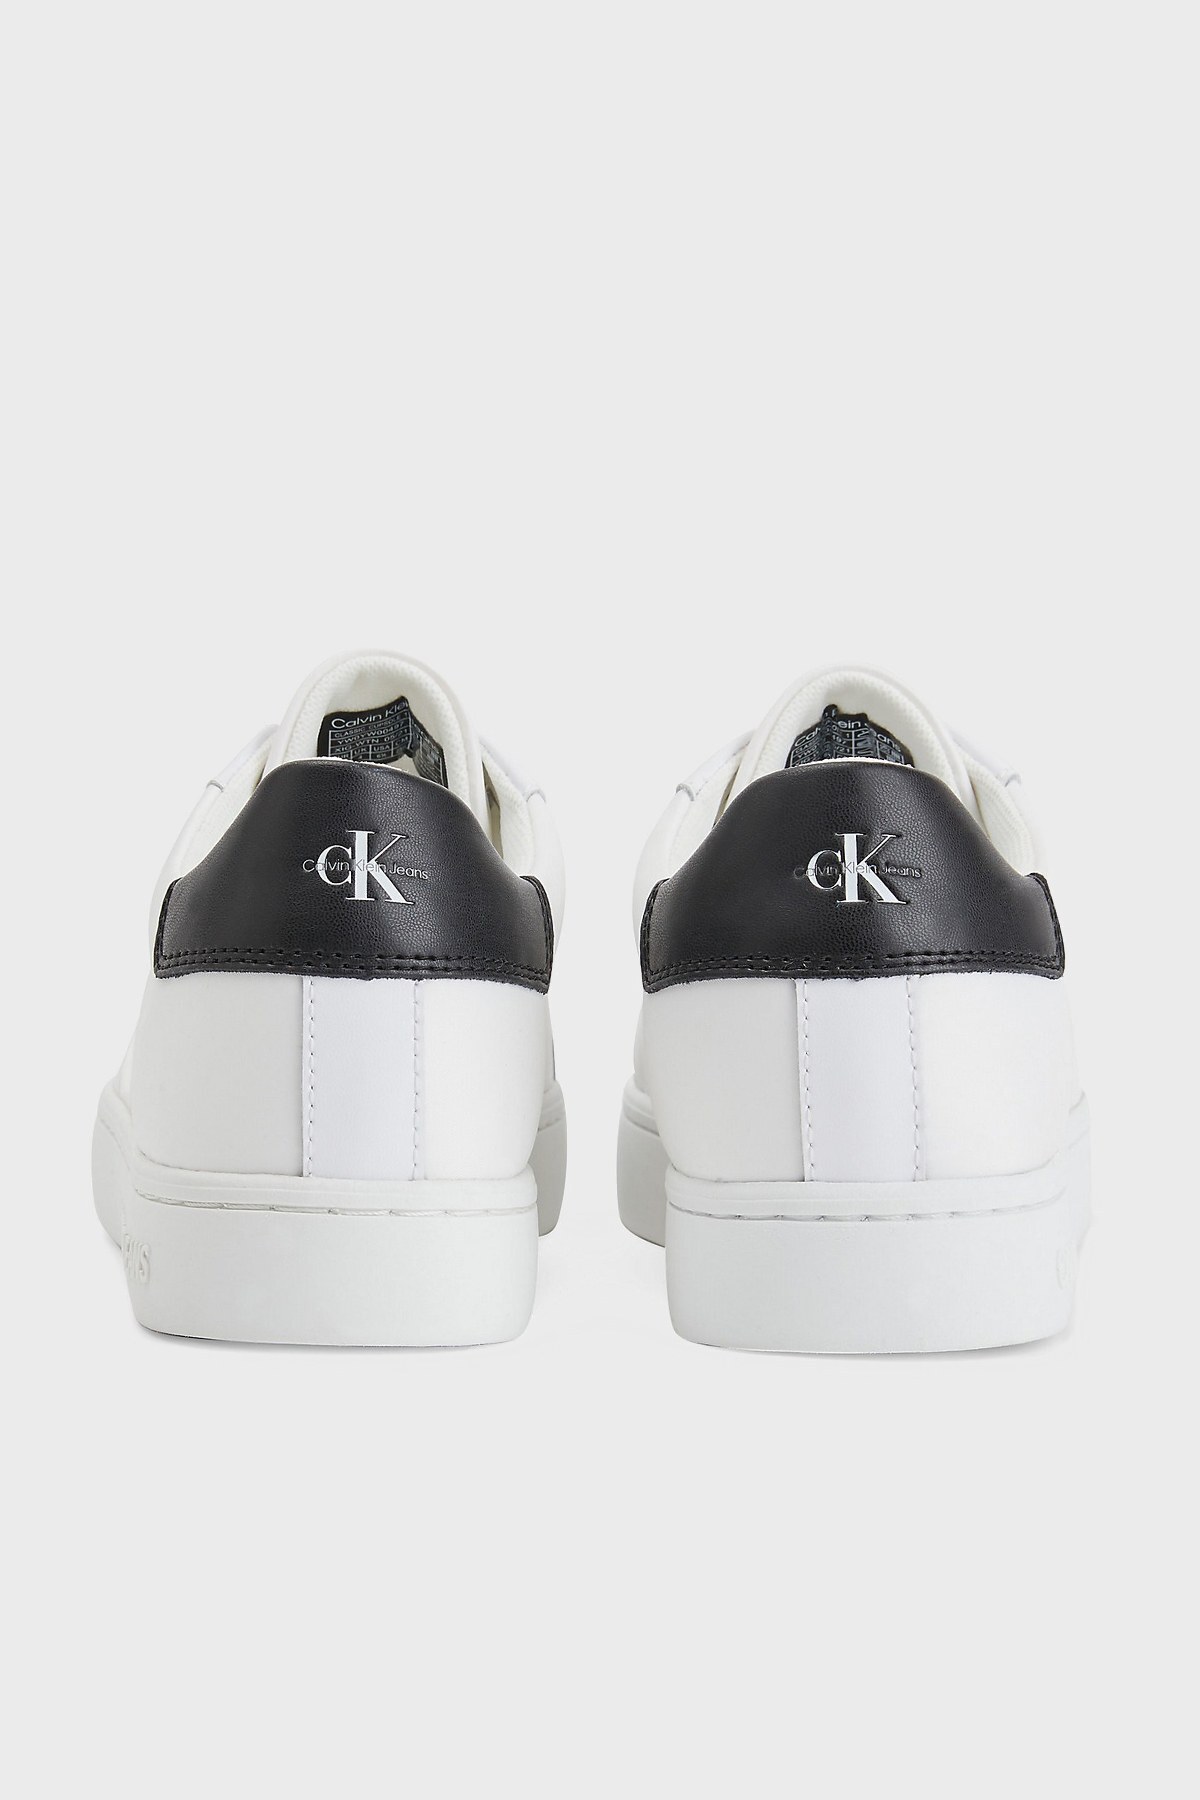 Calvin Klein Logolu Hakiki Deri Sneaker Bayan Ayakkabı YW0YW00497 0K8 BEYAZ